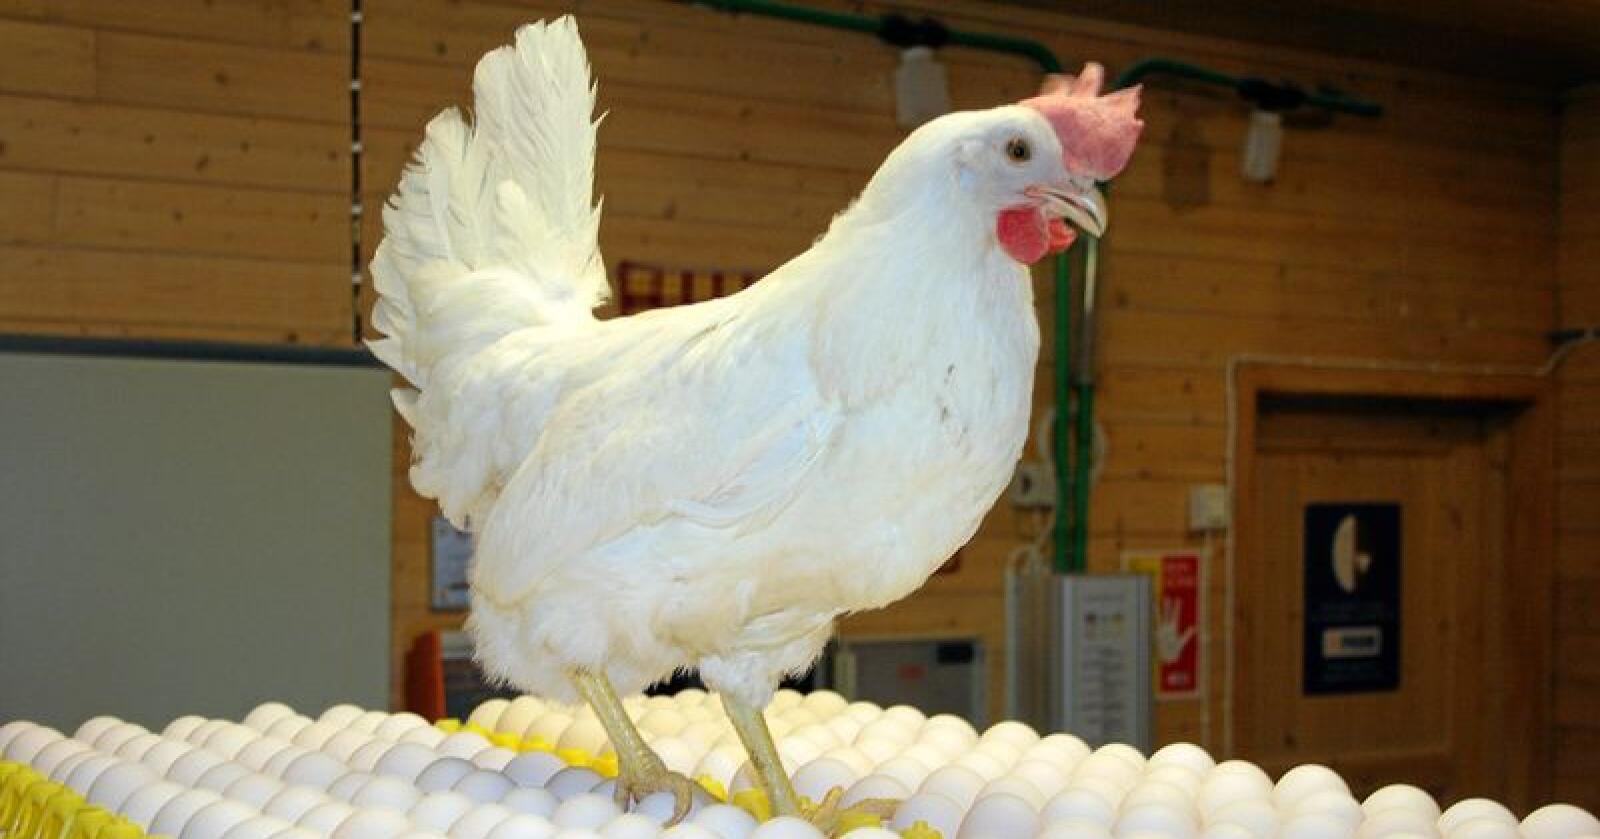 Høner som produserer egg får nå sitt eget velferdsprogram. Foto: Bjarne Bekkeheien Aase